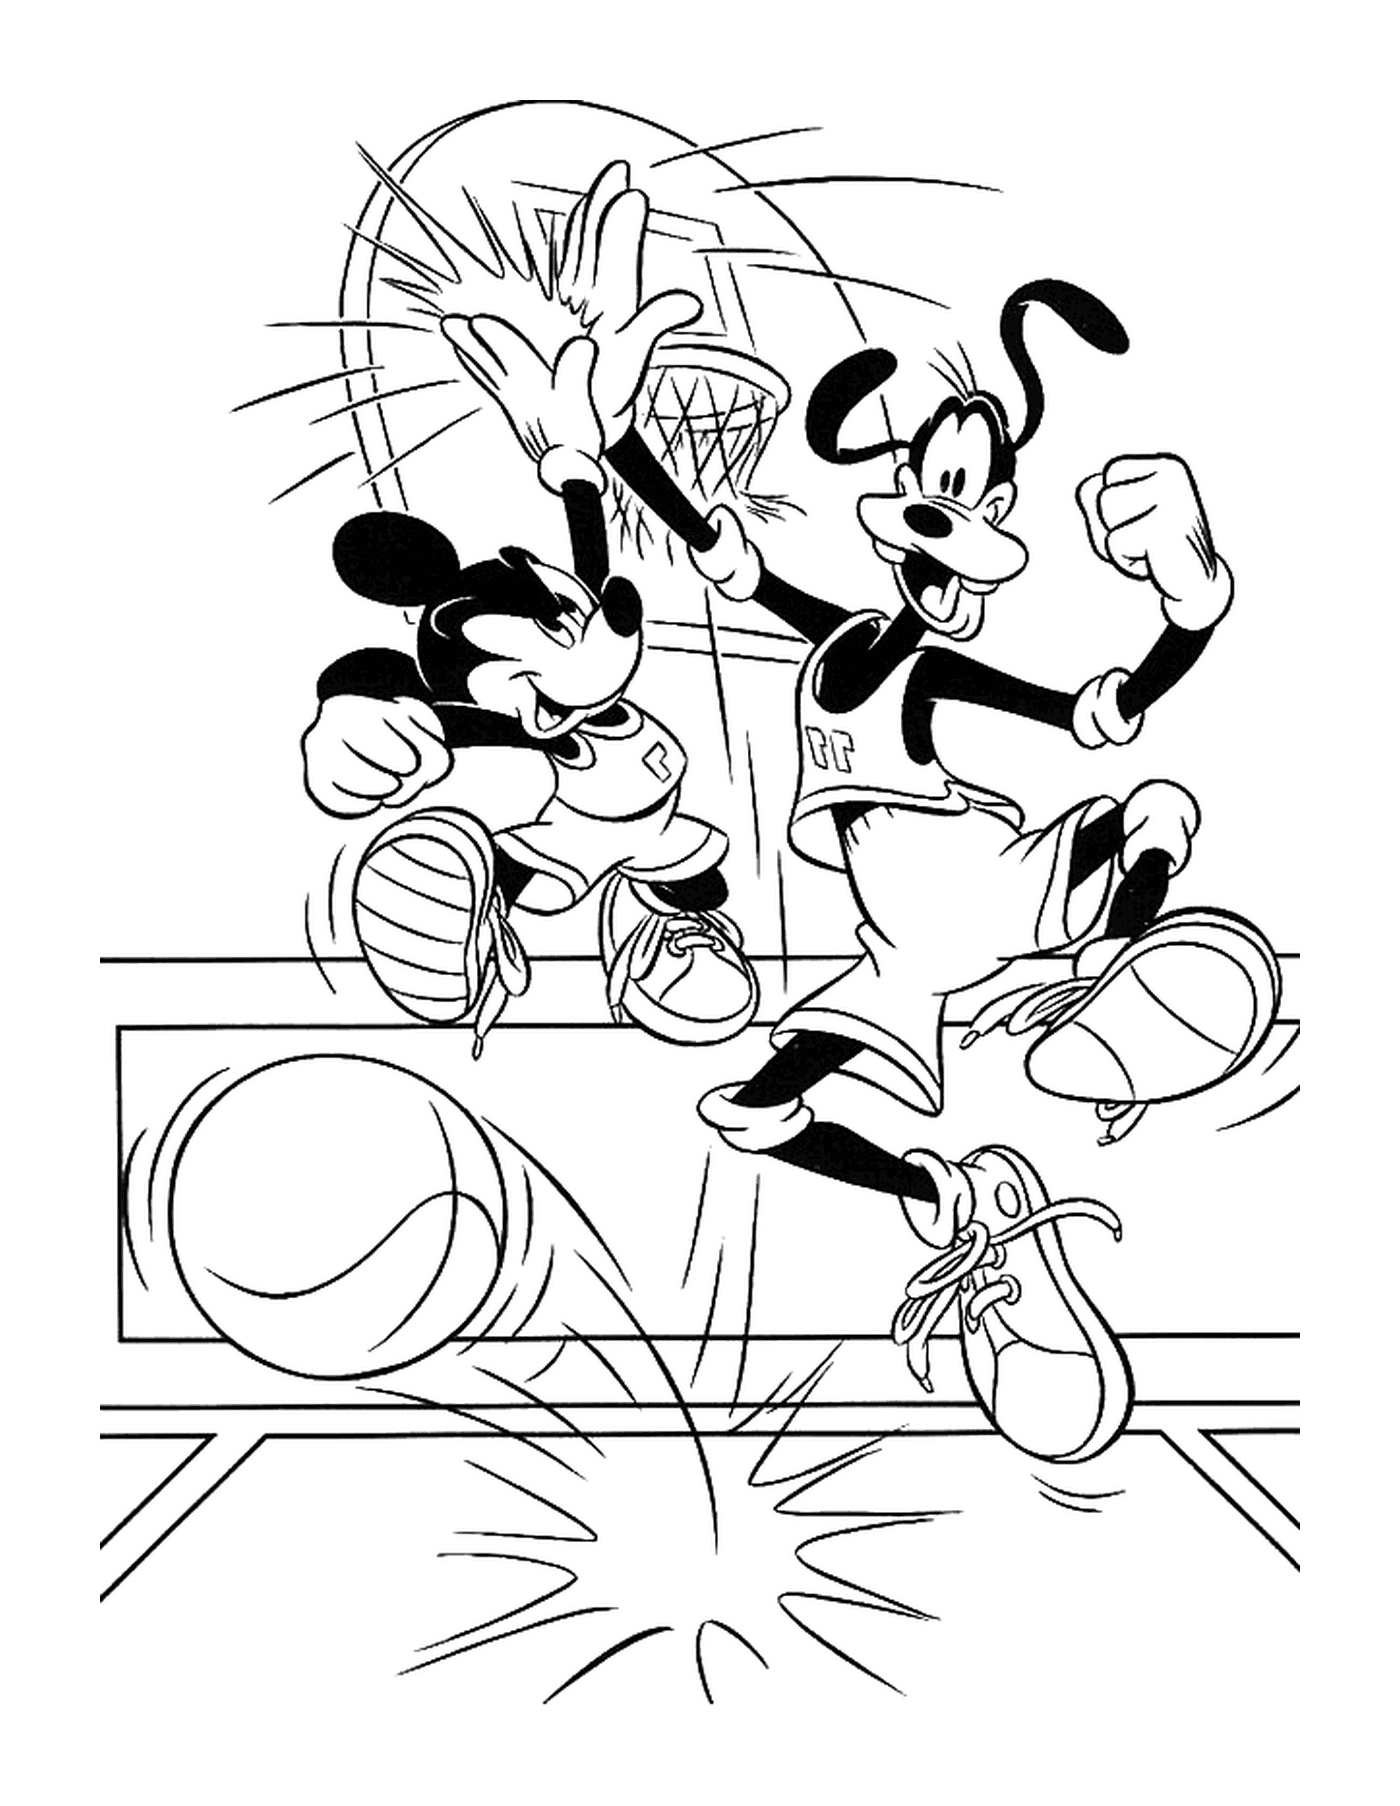  Dingo und Mickey spielen Basketball 